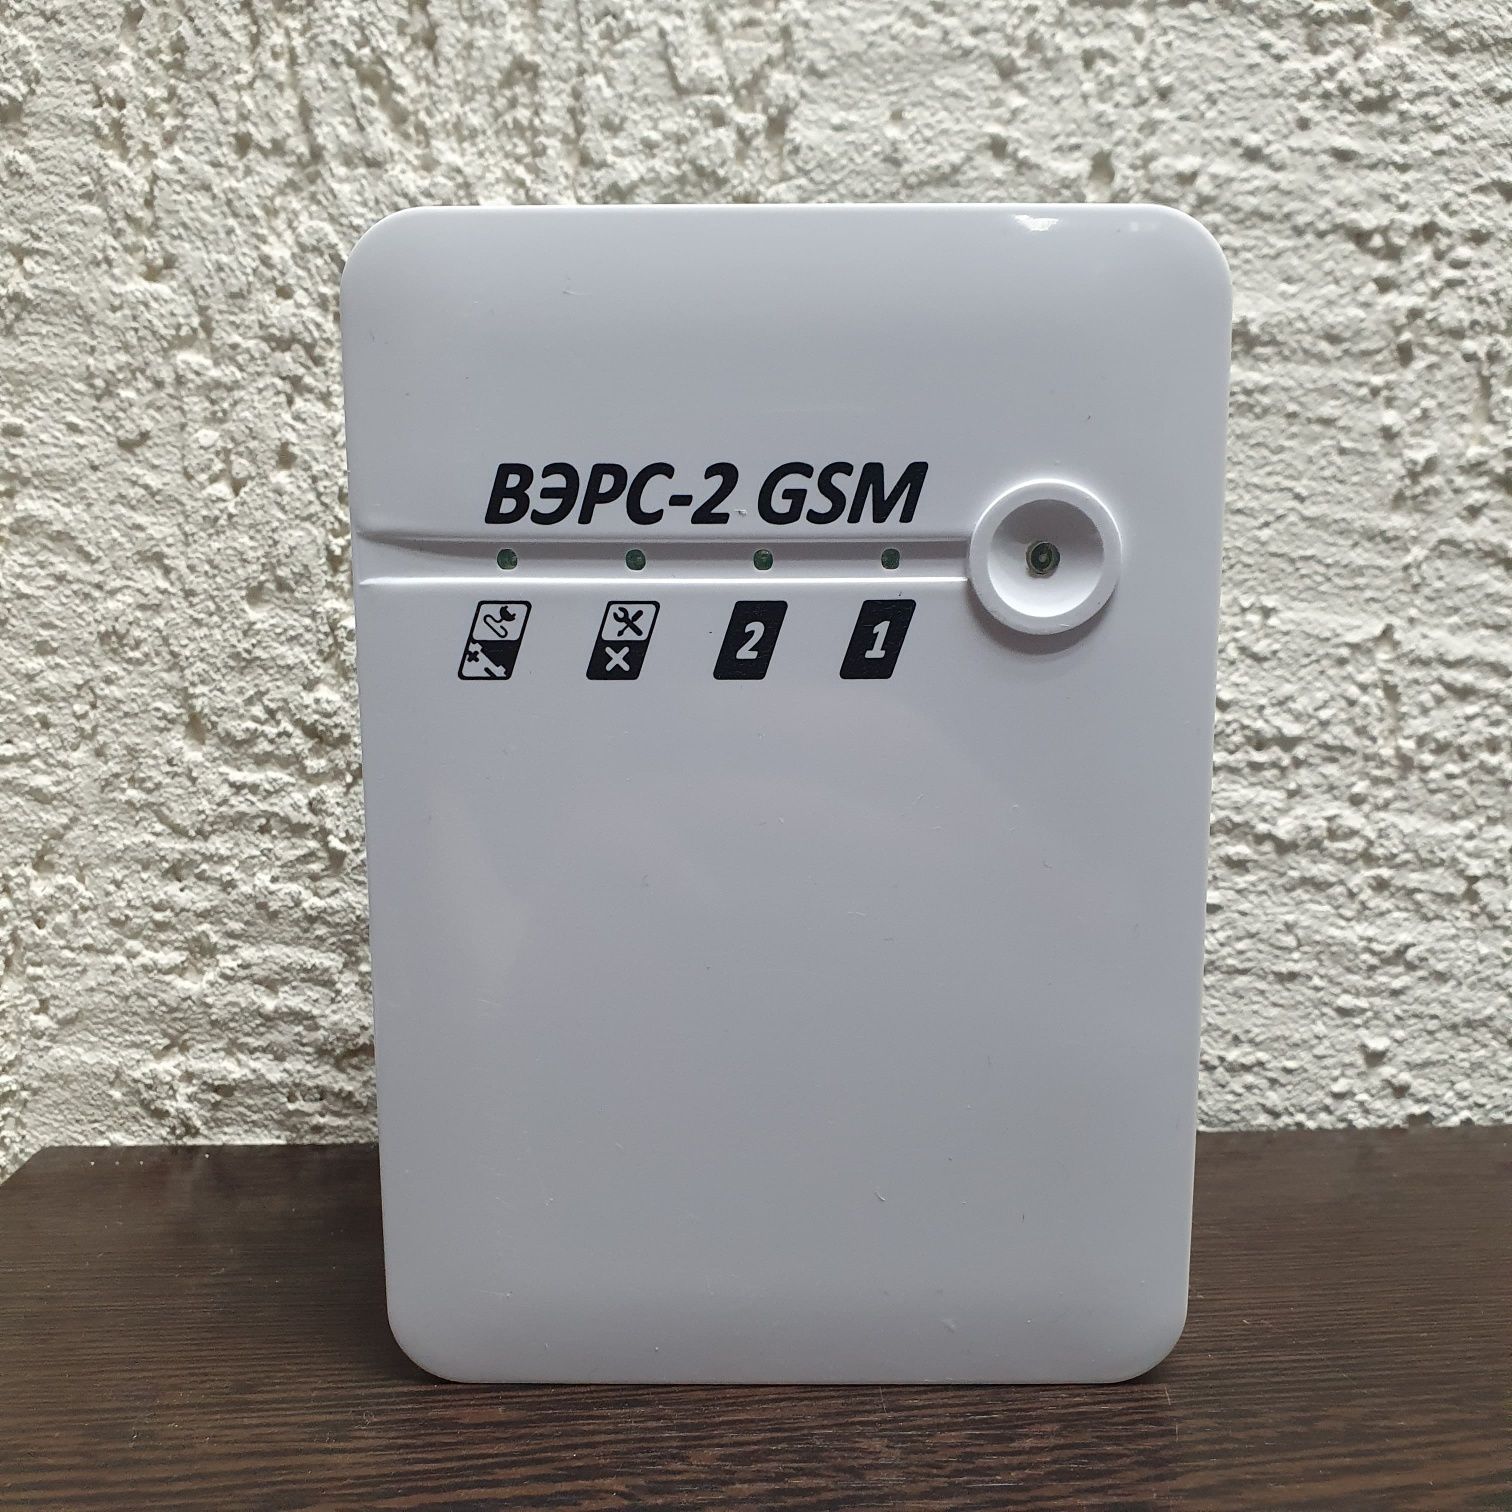 Охранно-пожарный прибор ВЭРС-2 GSM